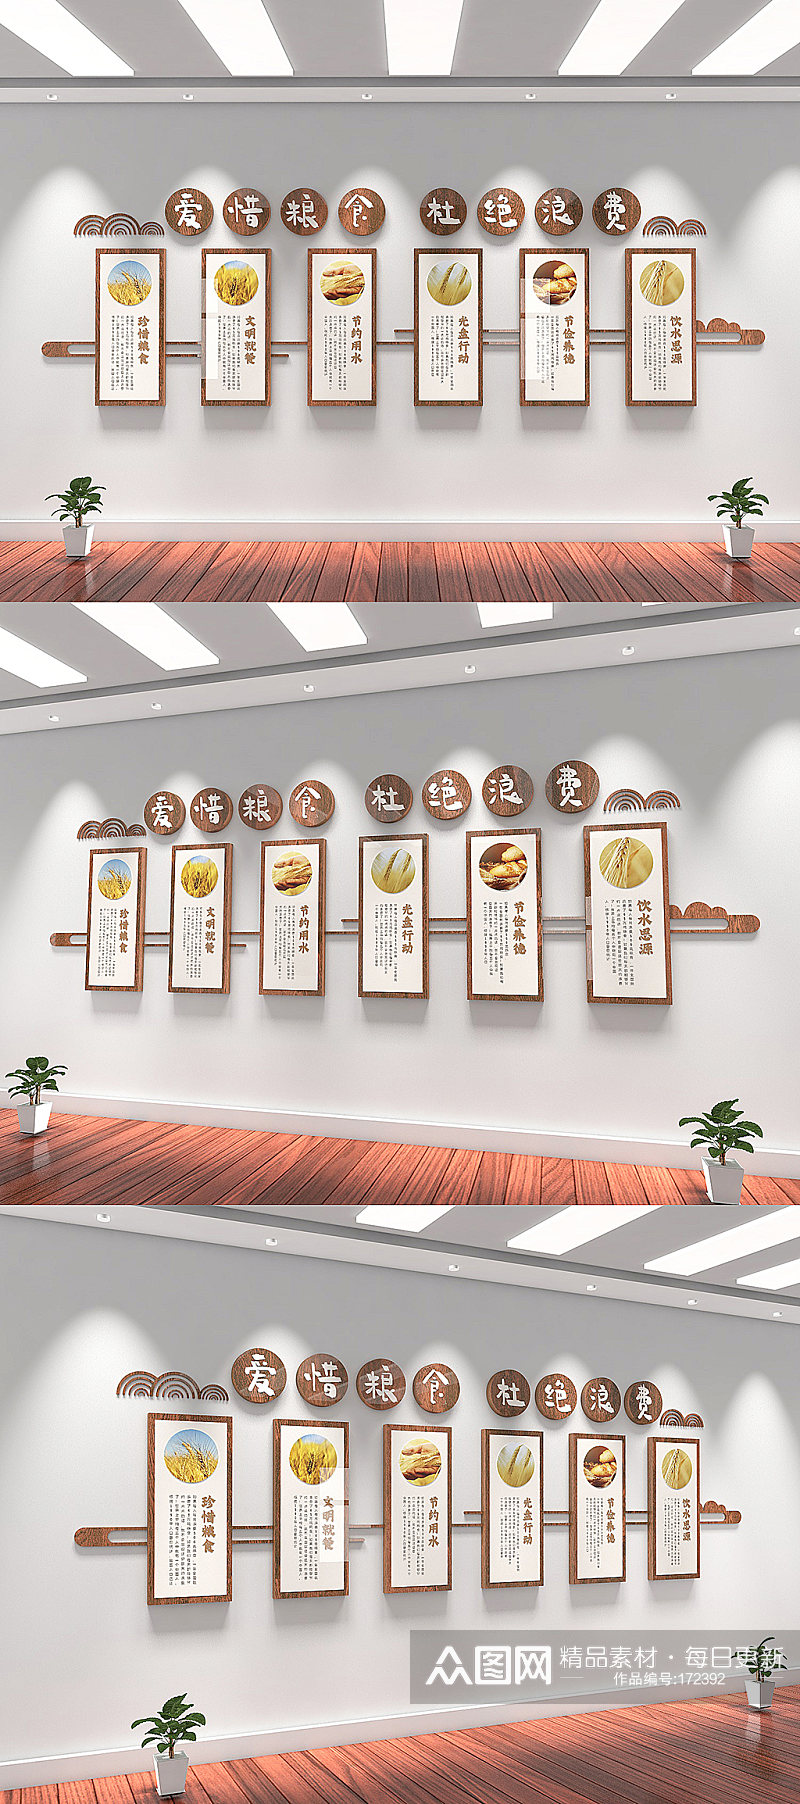 企业校园食堂餐厅酒店餐饮企业文化墙素材